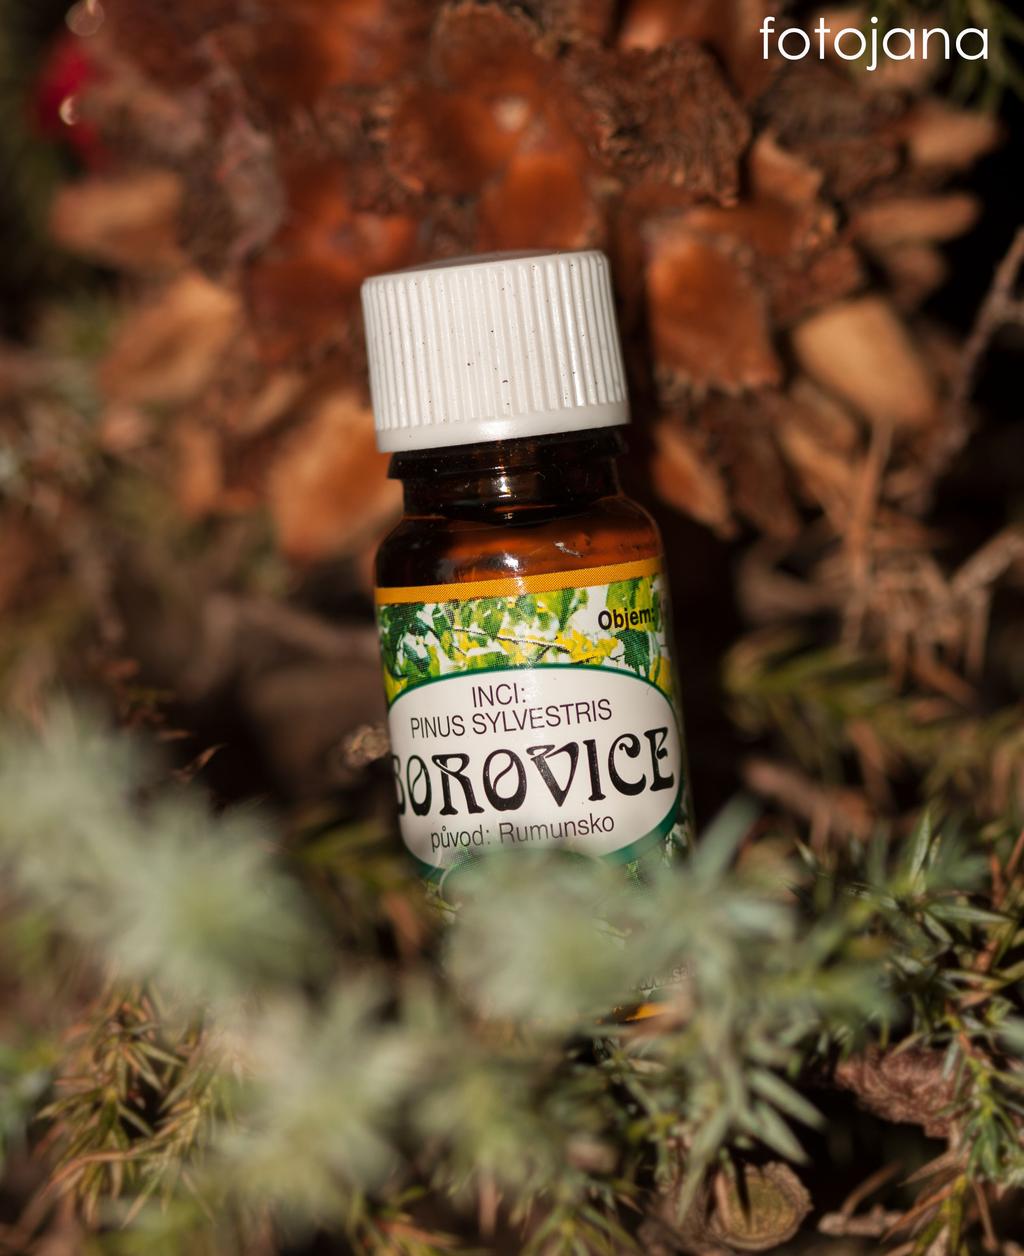 Esenciální olej Borovice má antibakteriální a protiinfekční účinky, výborně působí proti kašli, pomáhá při zánětech močových cest, posiluje při únavě.